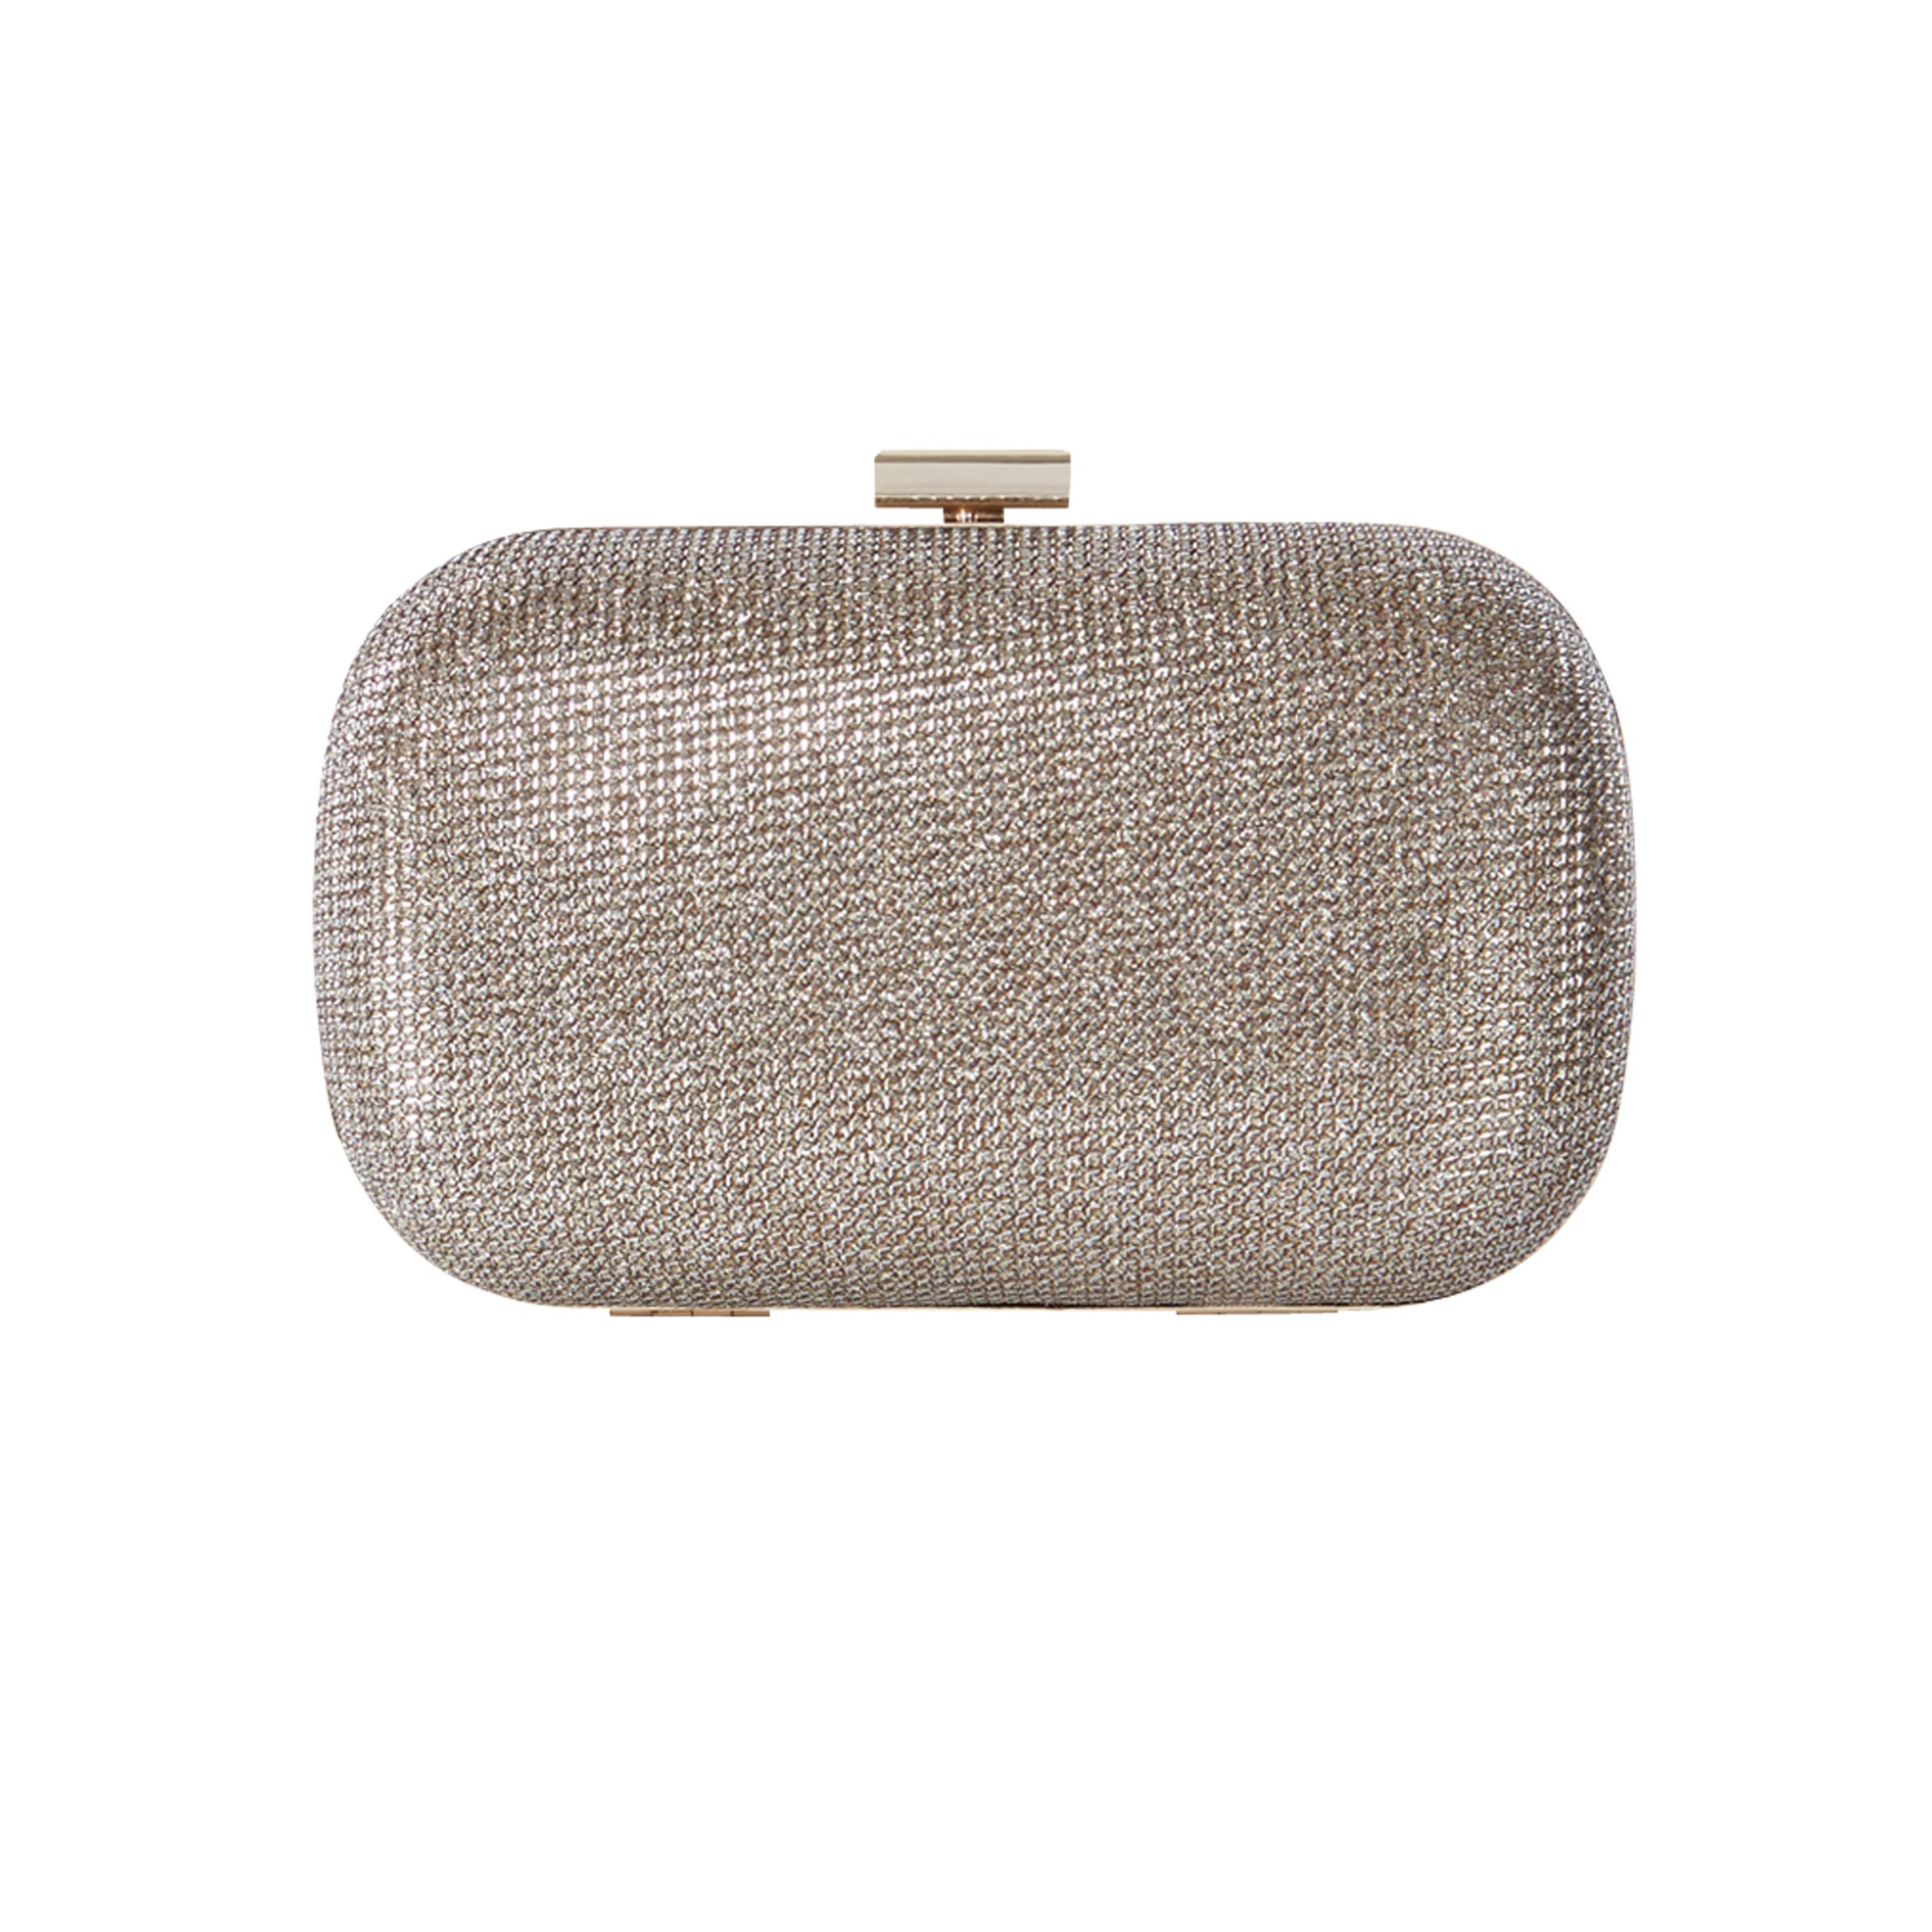 Karen Millen Glitter Box Clutch Bag, Gold at John Lewis & Partners